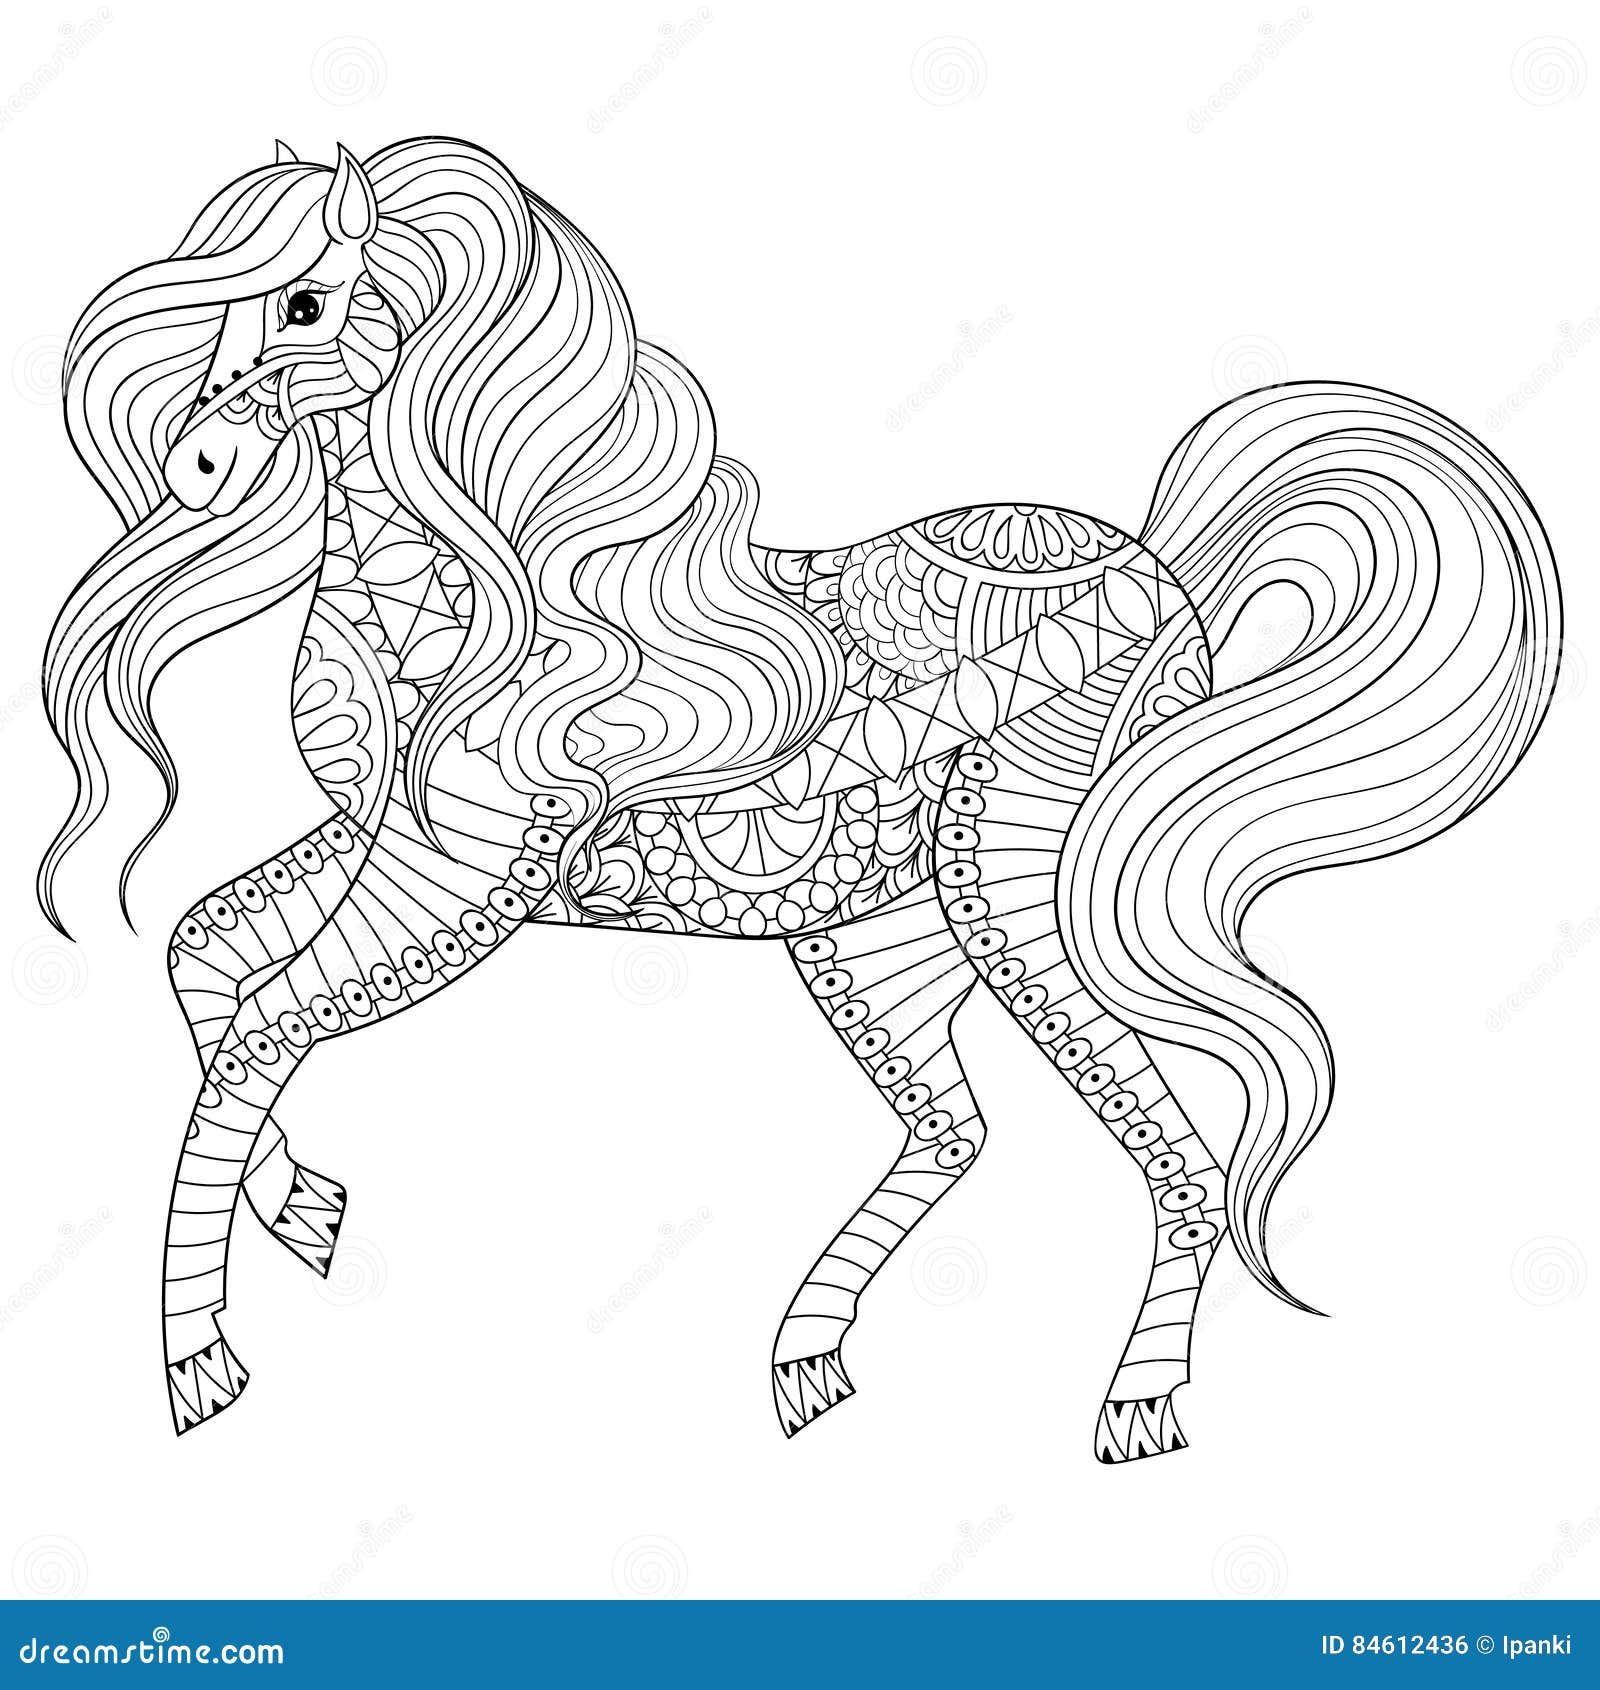 Cavallo disegnato a mano dello zentangle per la pagina adulta di coloritura terapia di arte